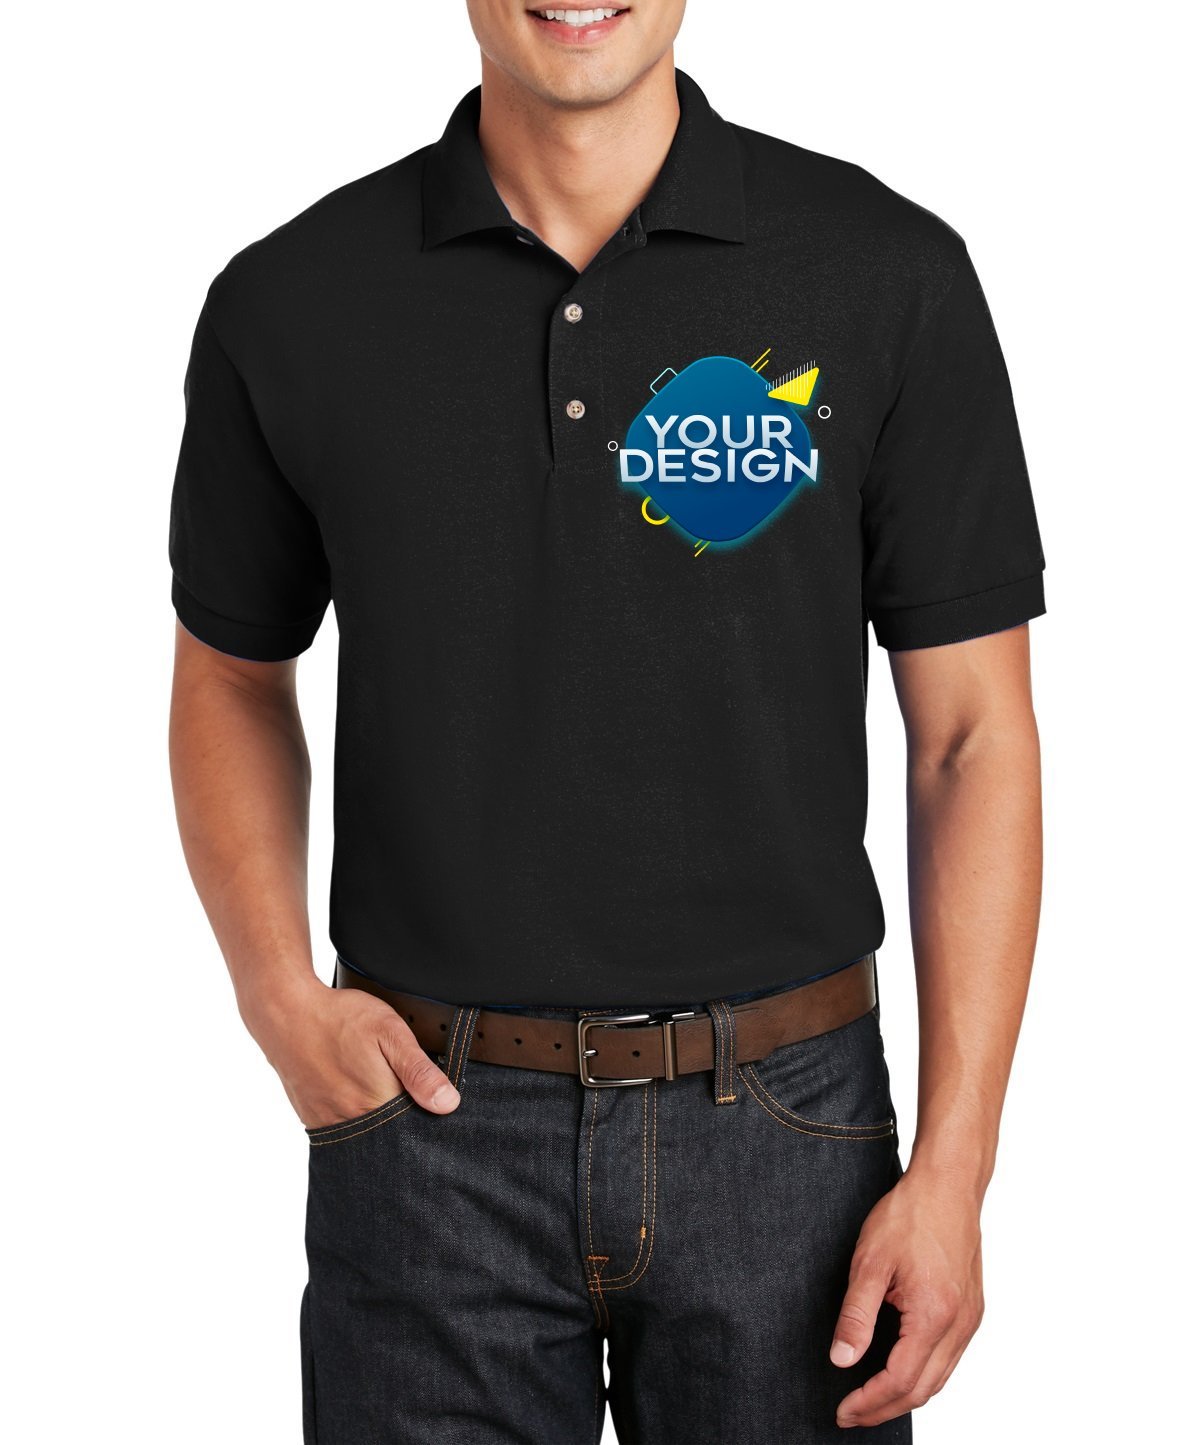 Gildan® DryBlend Jersey Knit Sport Shirt